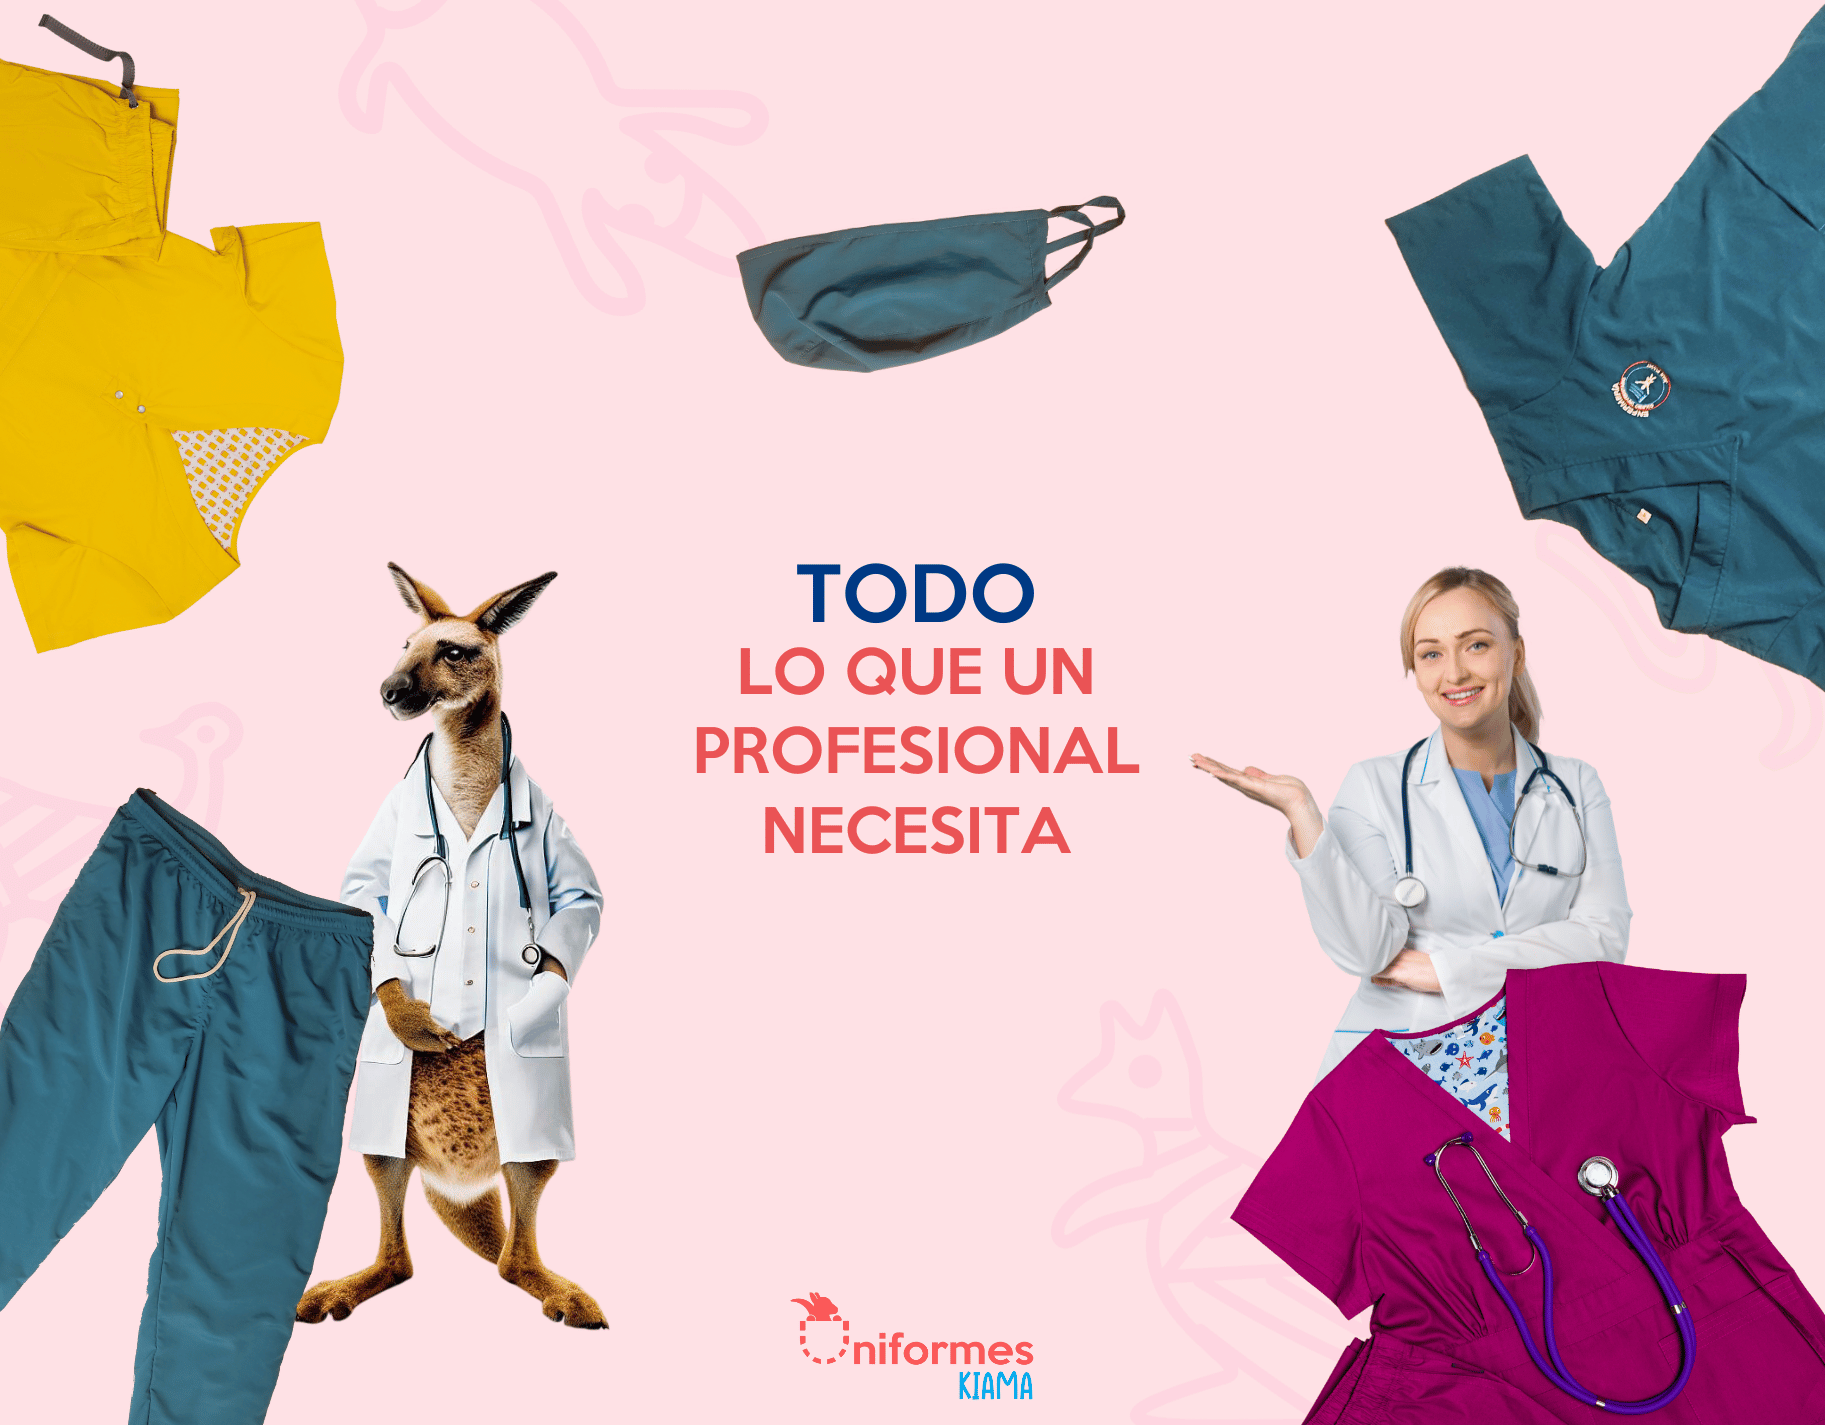 Todo en Uniformes medicos en caracas venezuela: Batas, gorros, monos y más.